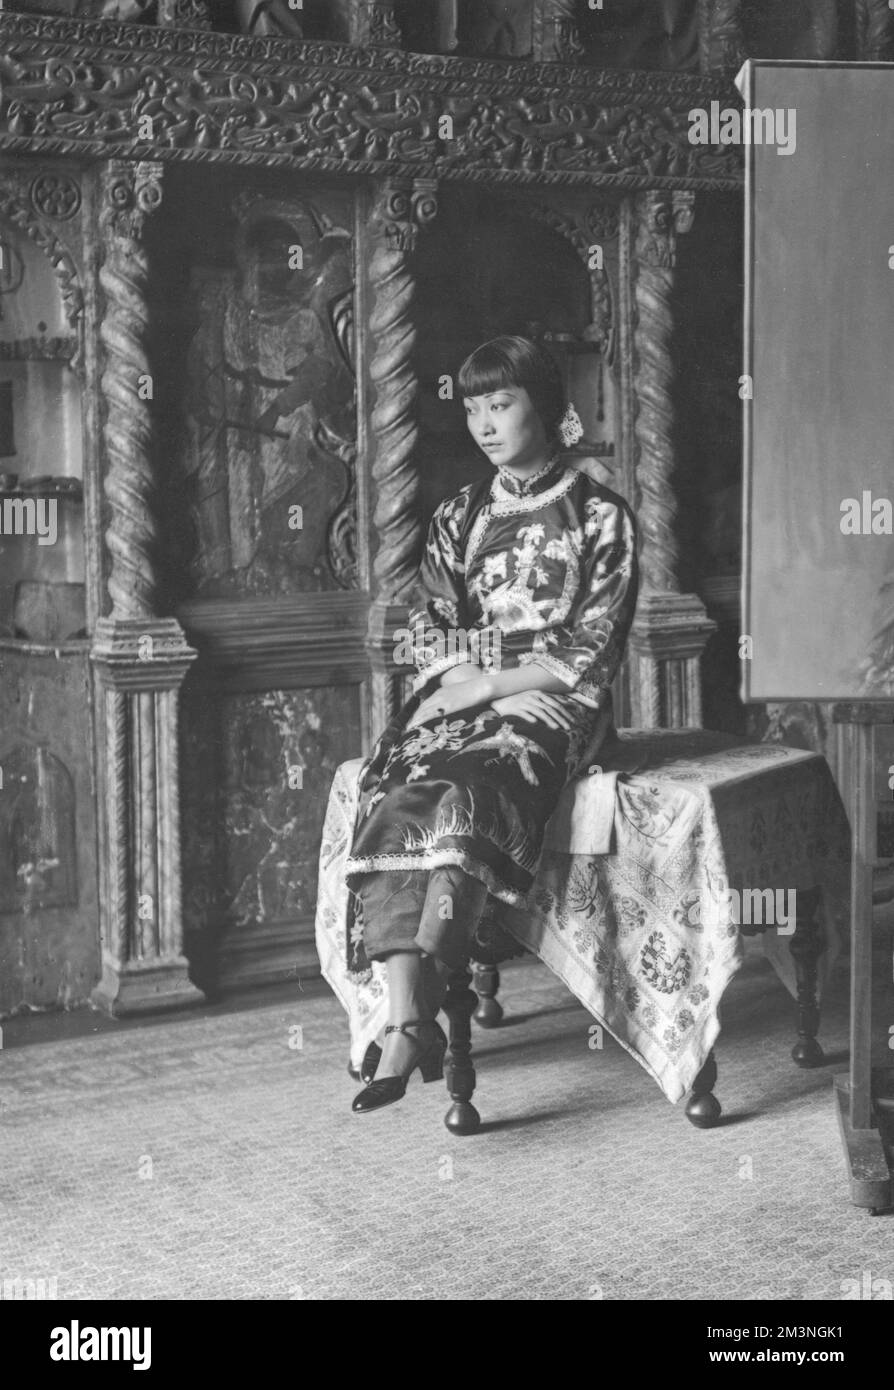 Ritratto di Anna May Wong, attrice cinematografica cinese americana (1905 - 1961) raffigurato in un abito tradizionale cheongsam che guarda riflettente. Data: c.1930 Foto Stock